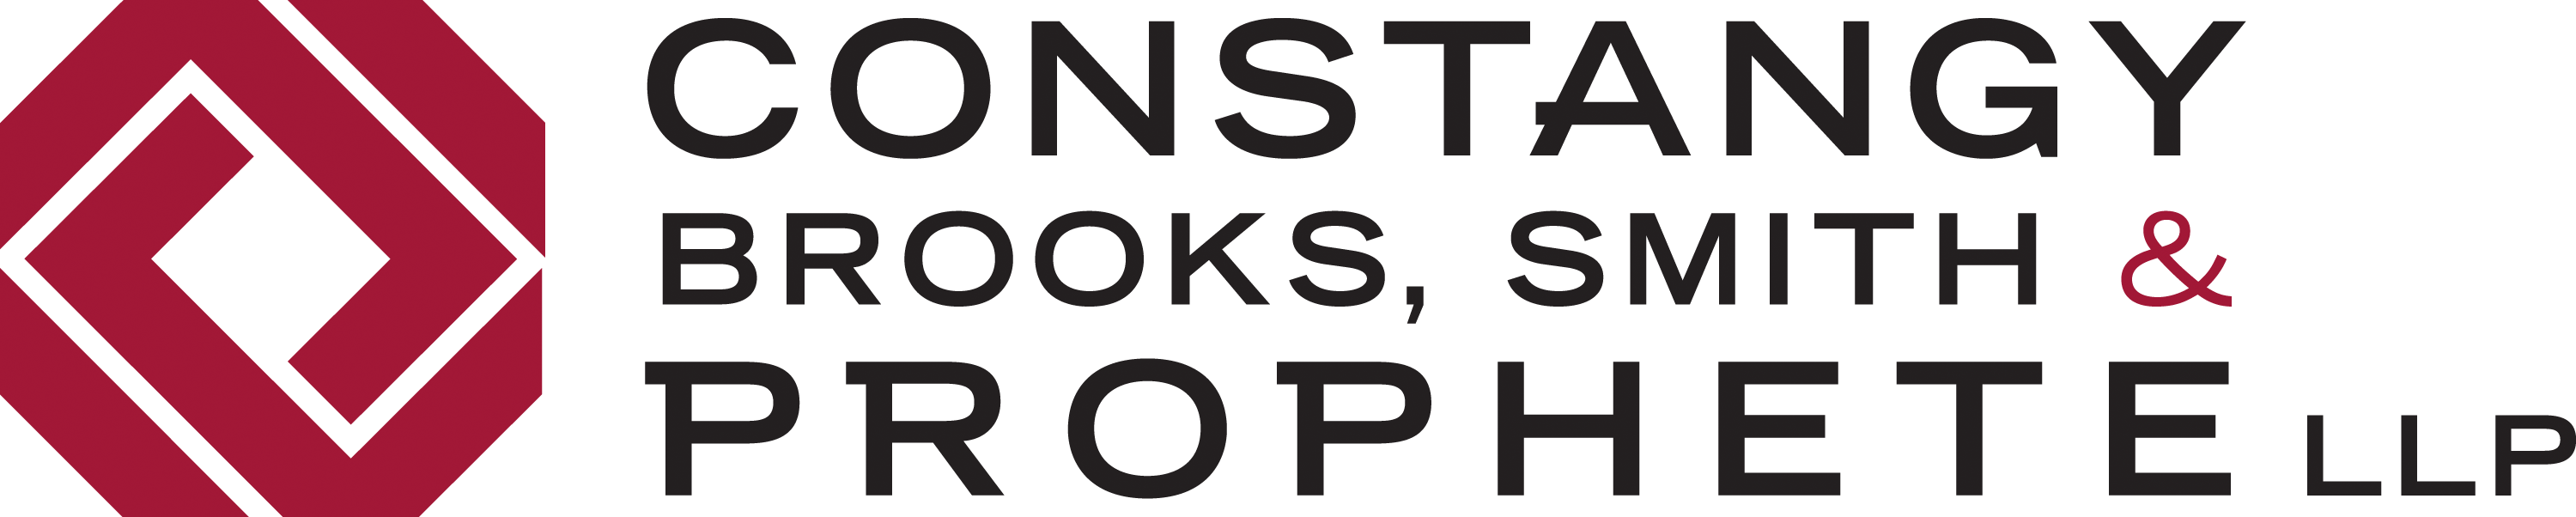 CONSTANGY, BROOKS, SMITH & PROPHETE logo